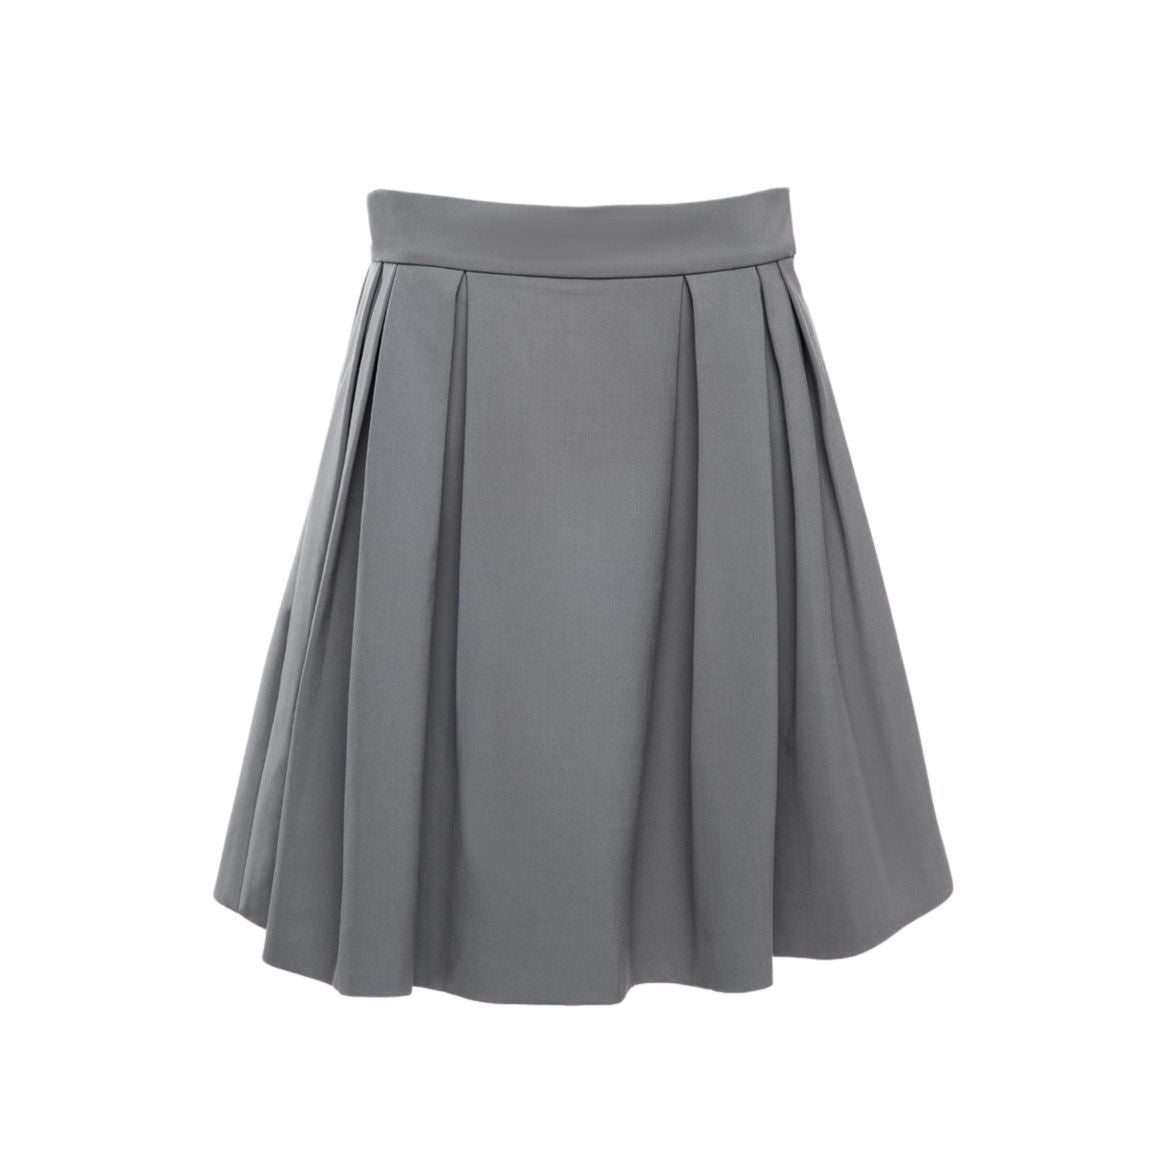 Eleanor Skirt in Grey